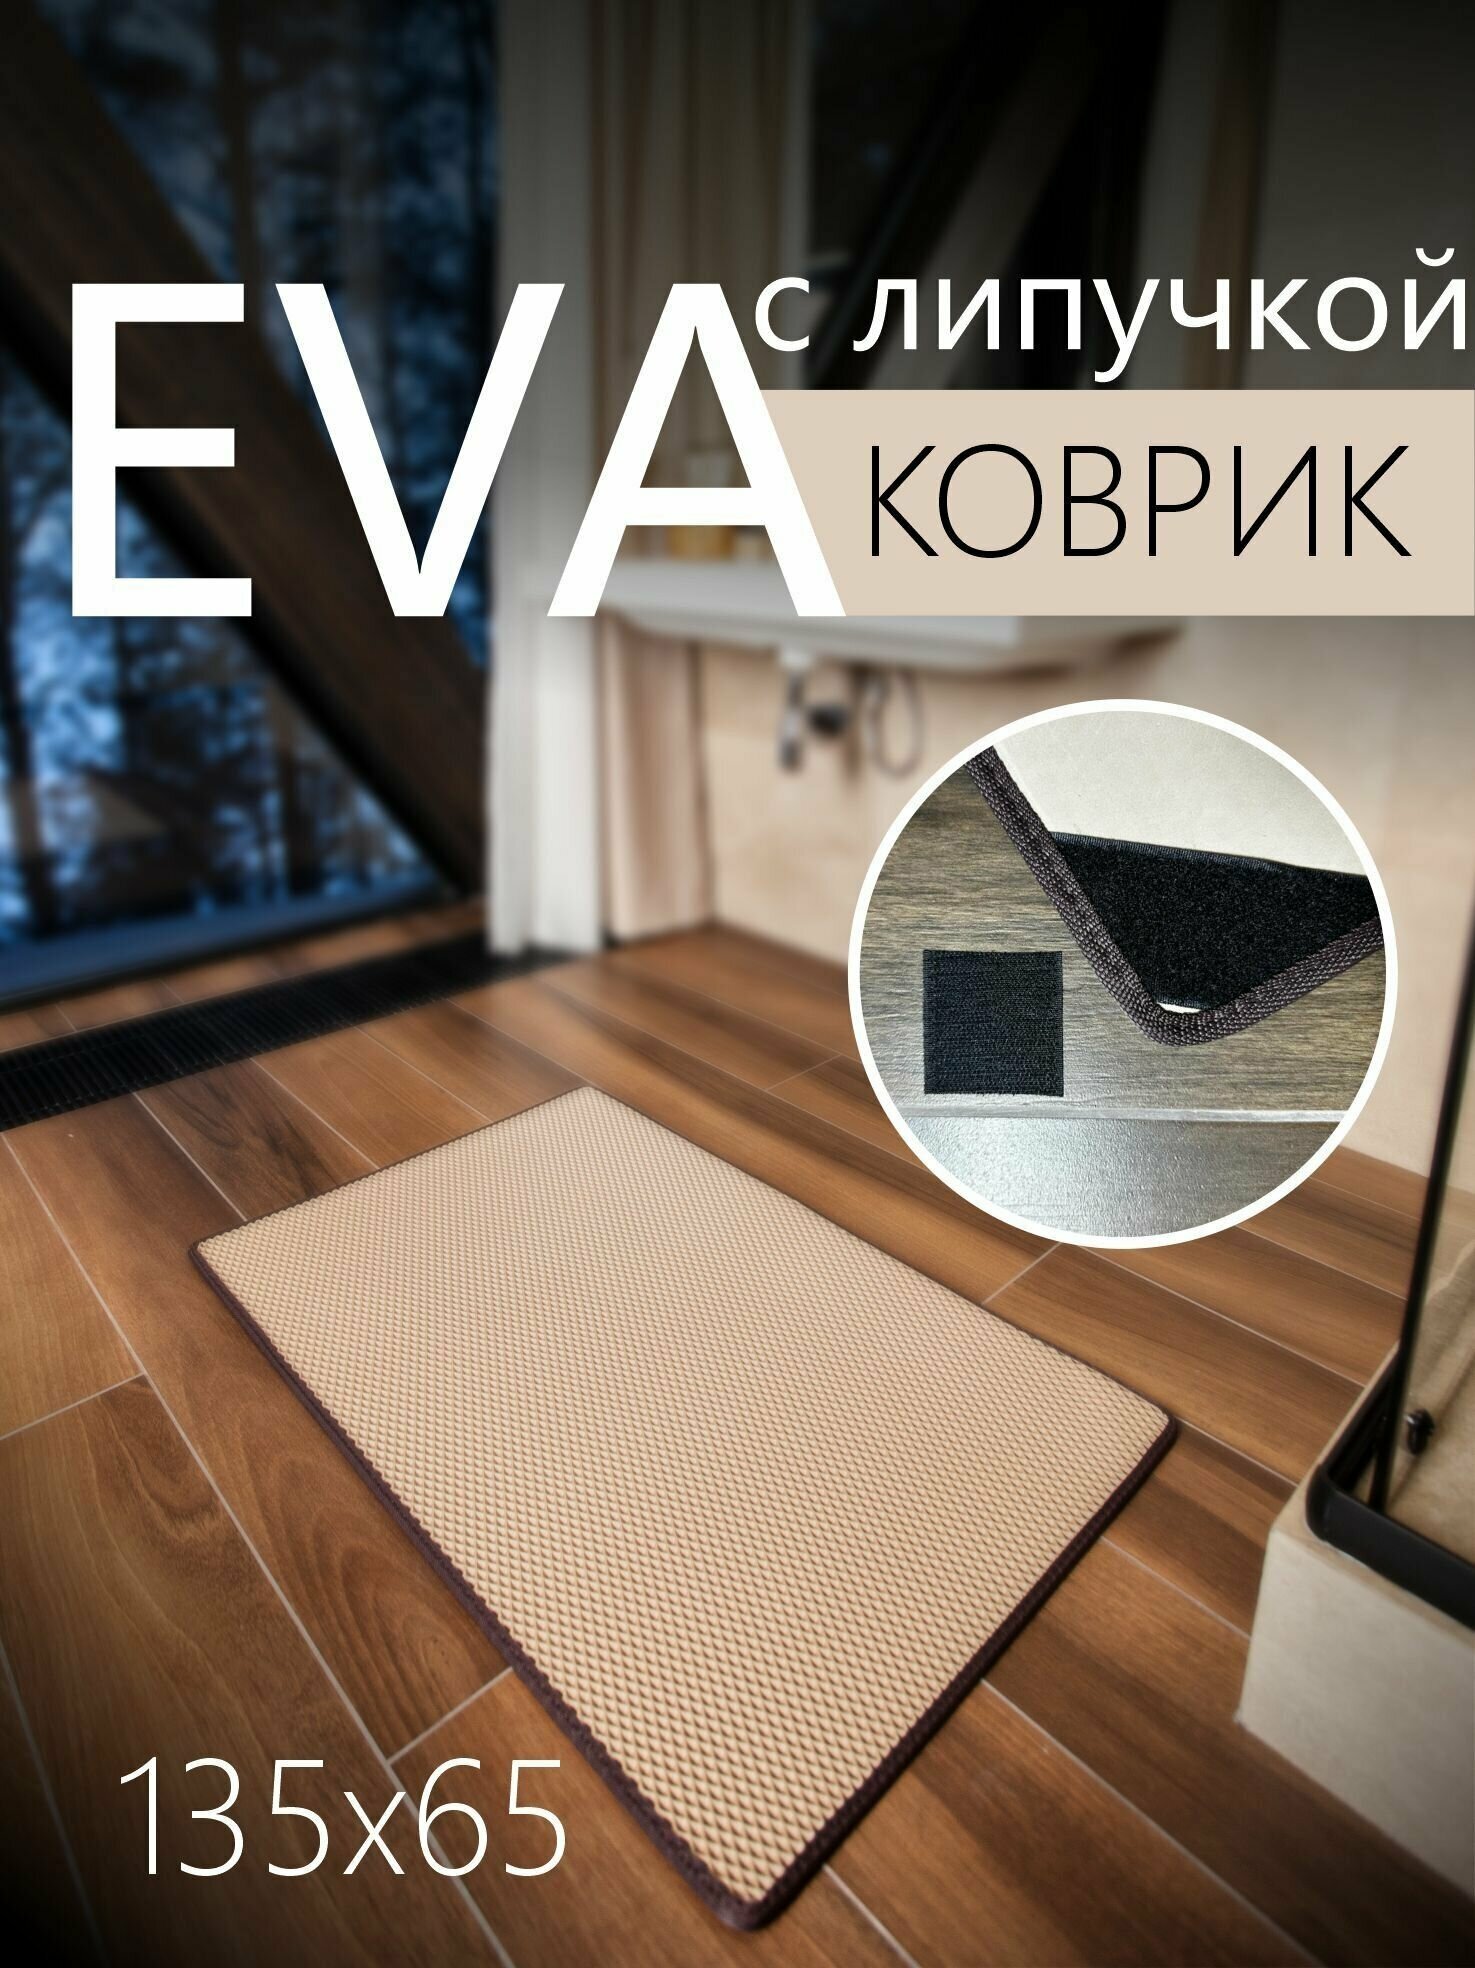 Коврик придверный противоскользящий EVA ЭВА универсальный 135х65 сантиметров. Липучки для фиксации. Ромб Бежевый с коричневой окантовкой